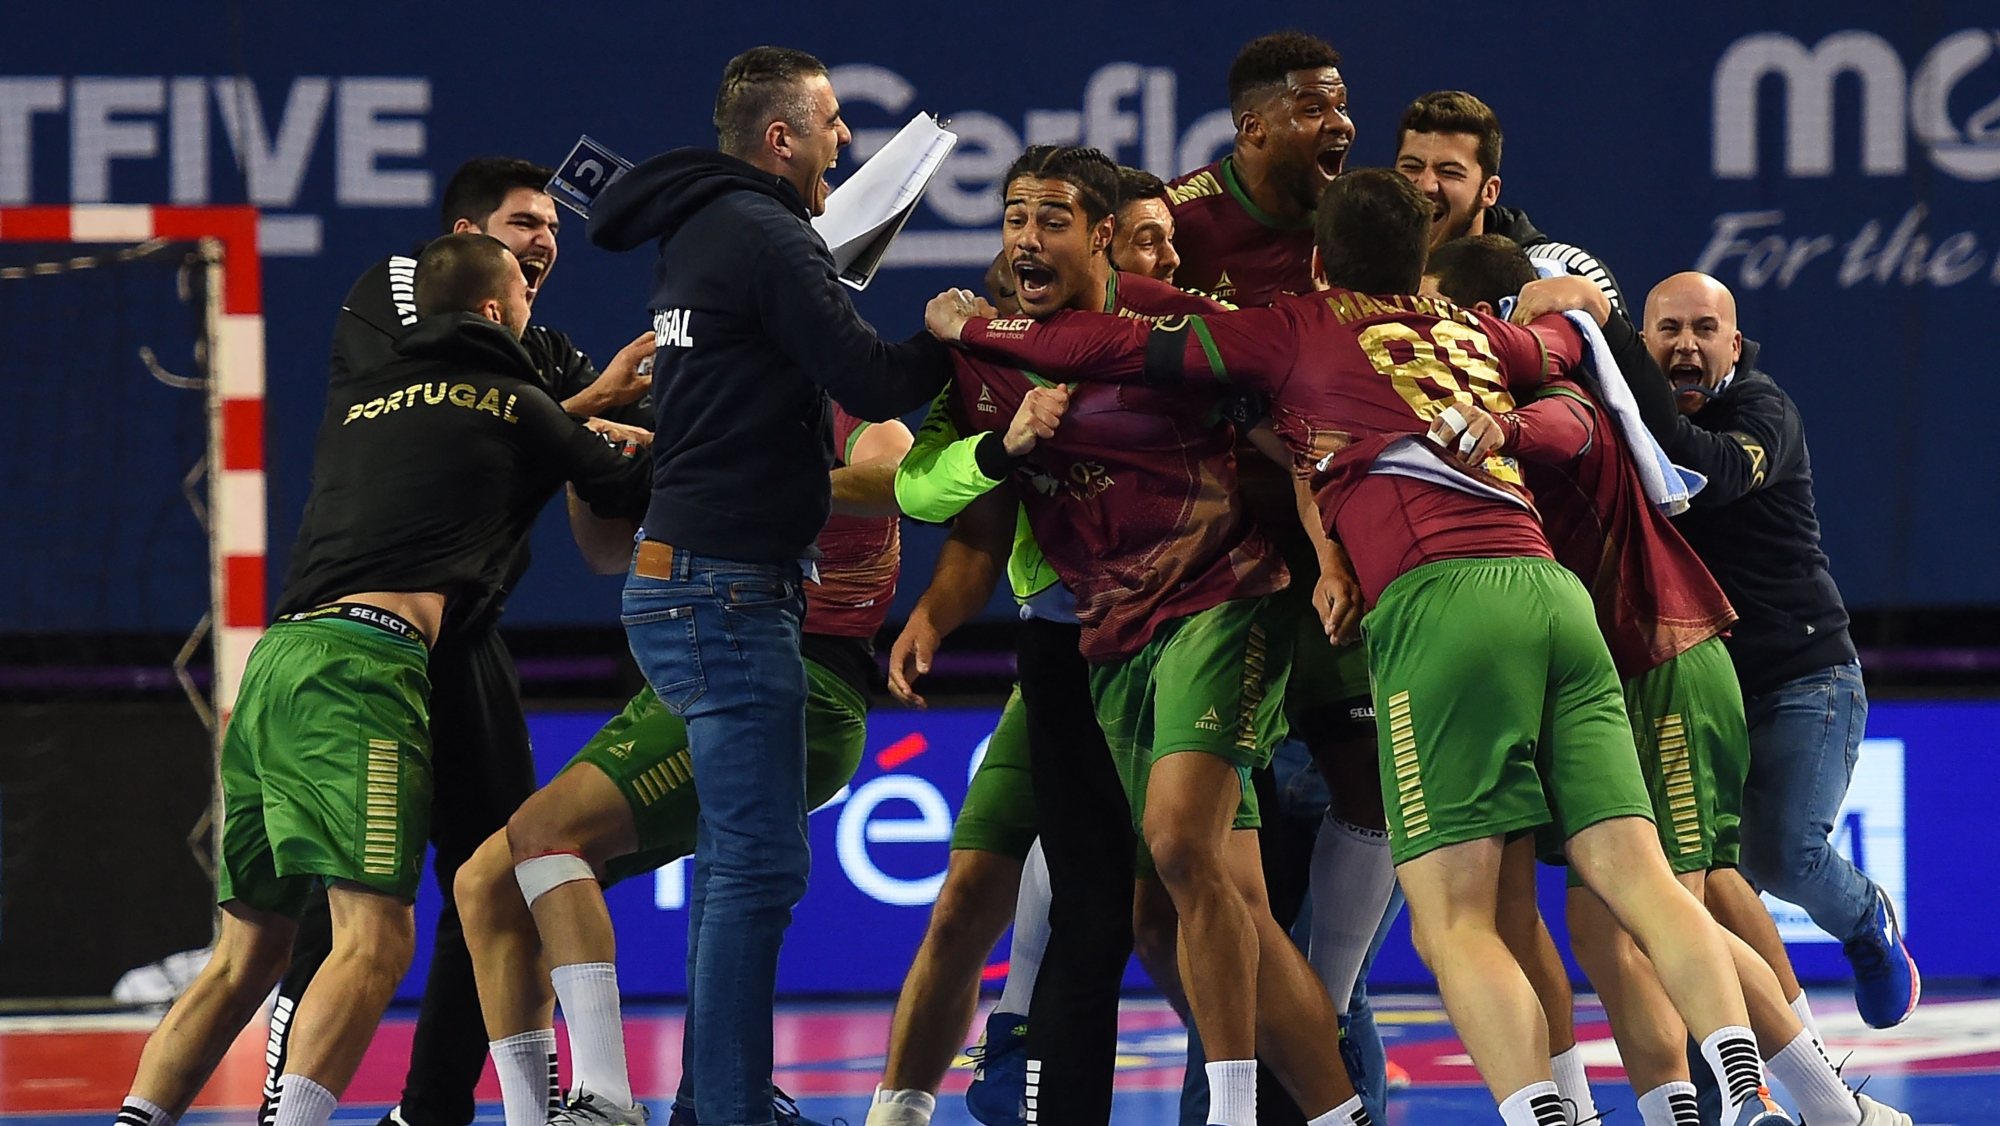 Portugal conseguiu a qualificação após vencer a França por 29-28 com um golo de Rui Silva a cinco segundos do final do terceiro e último jogo do torneio pré-olímpico de qualificação